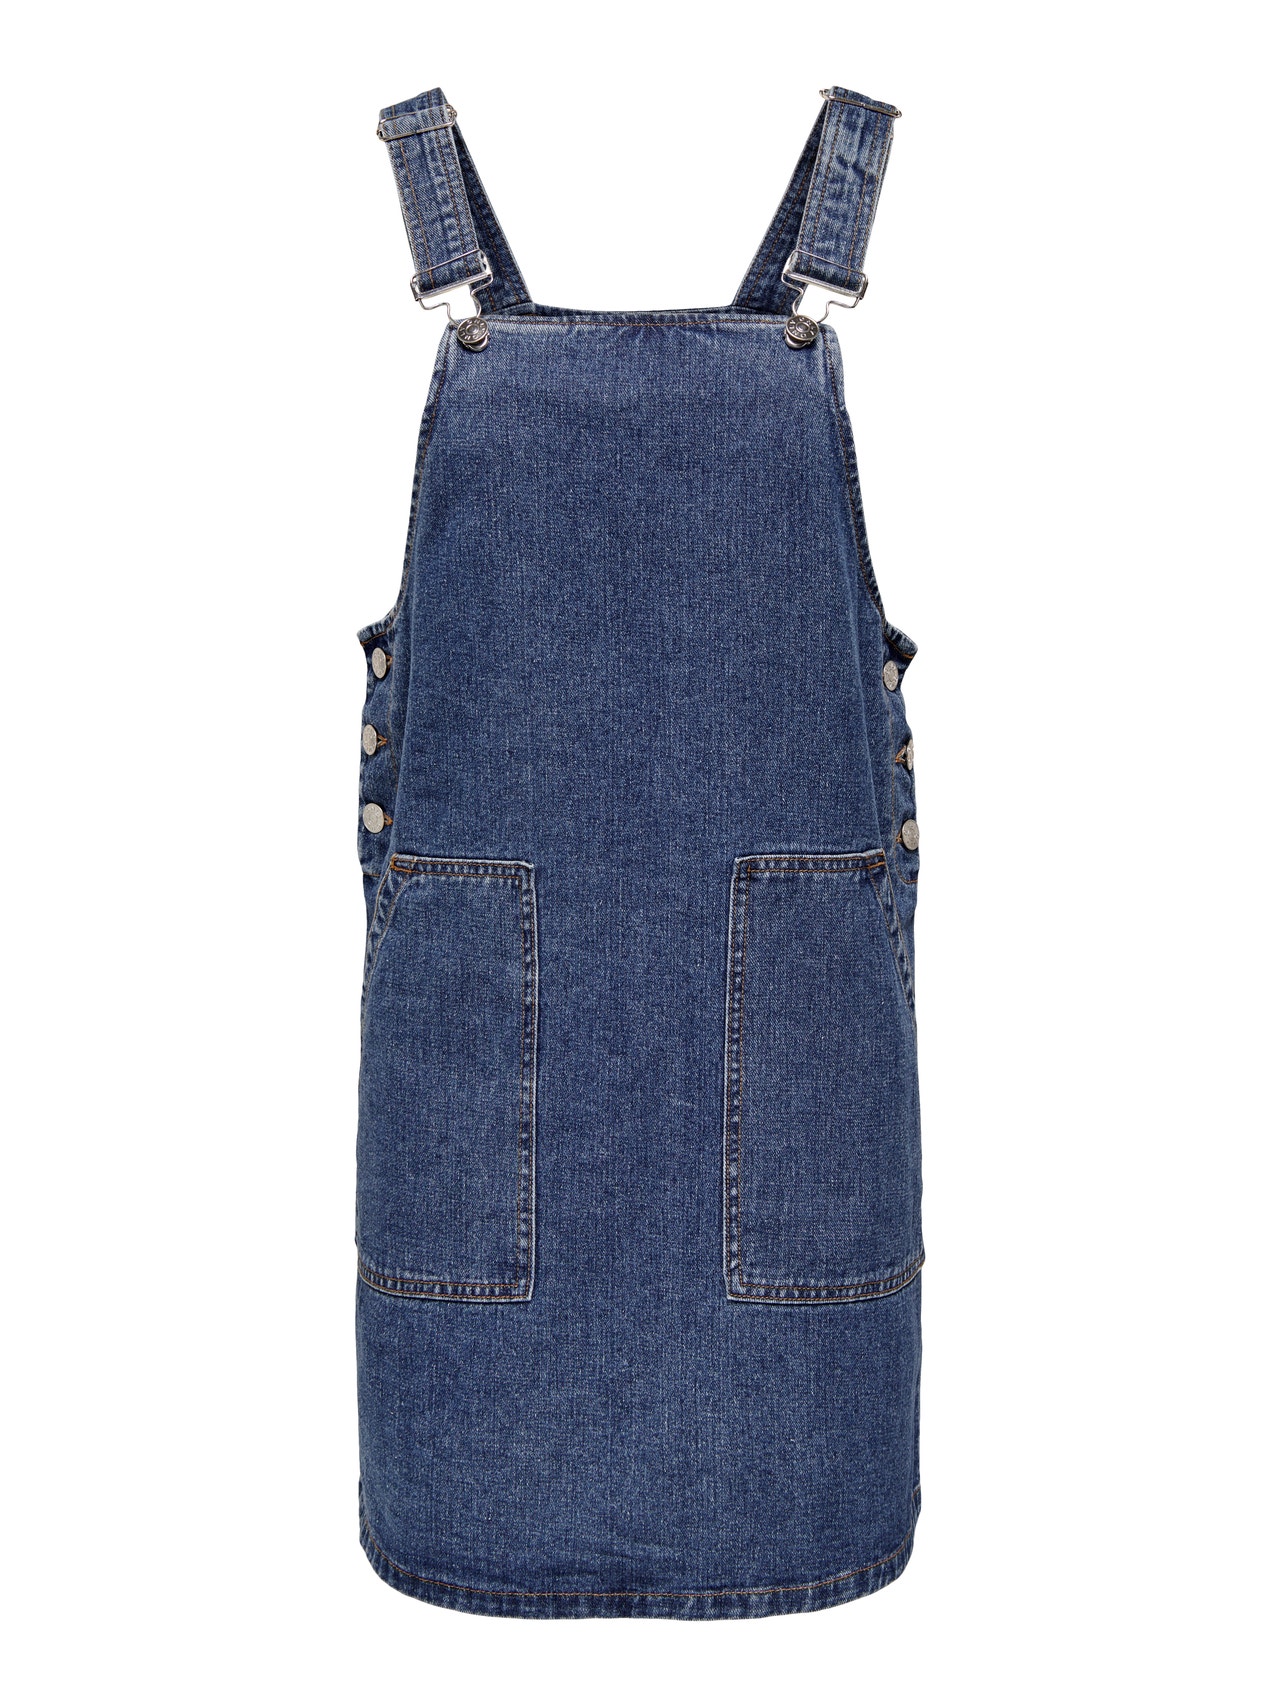 ONLY Loose Fit Square neck Short dress -Medium Blue Denim - 15292640